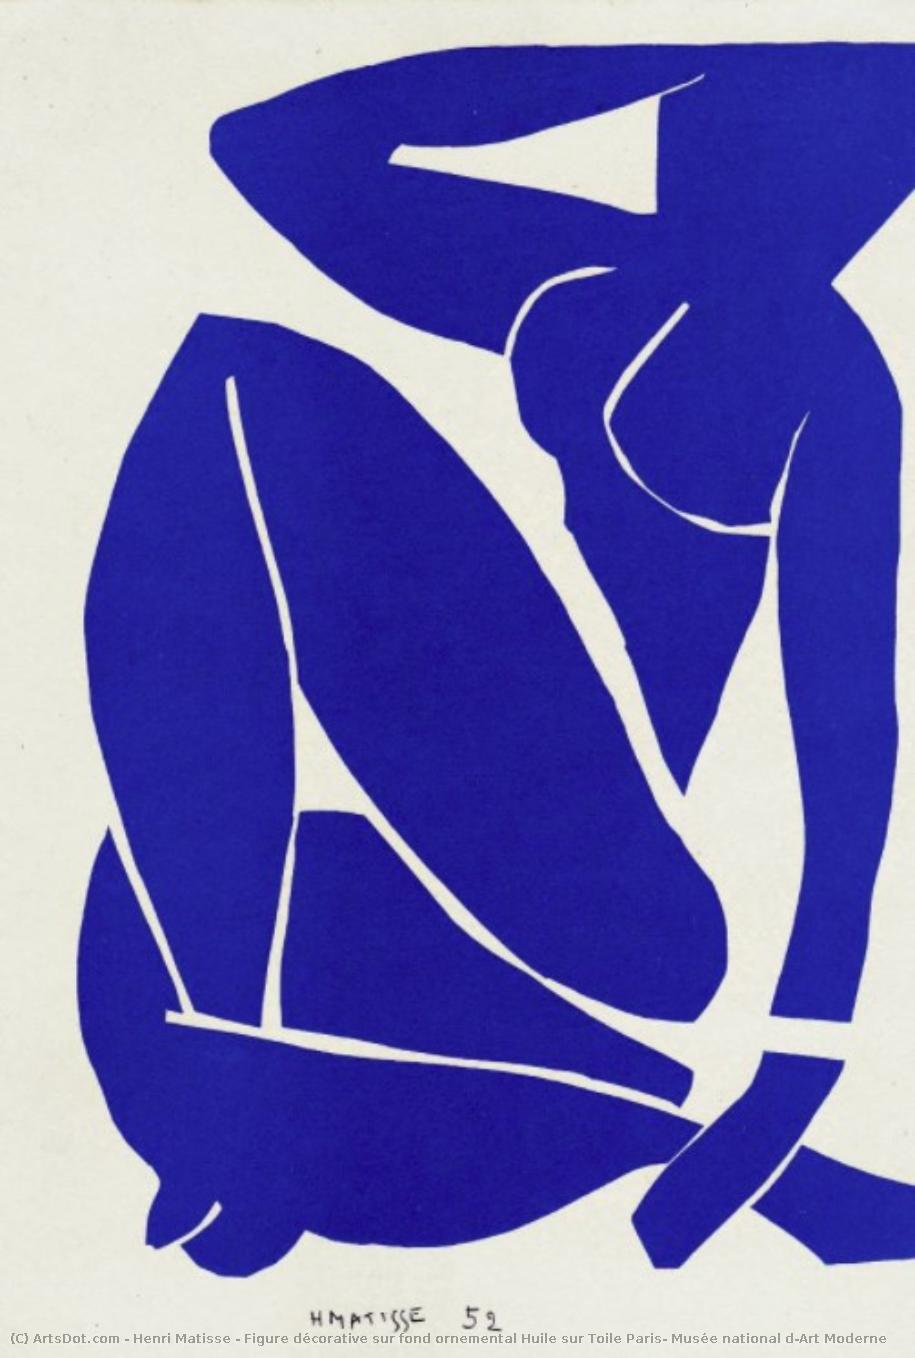 WikiOO.org - Encyclopedia of Fine Arts - Malba, Artwork Henri Matisse - Figure décorative sur fond ornemental Huile sur Toile Paris, Musée national d'Art Moderne